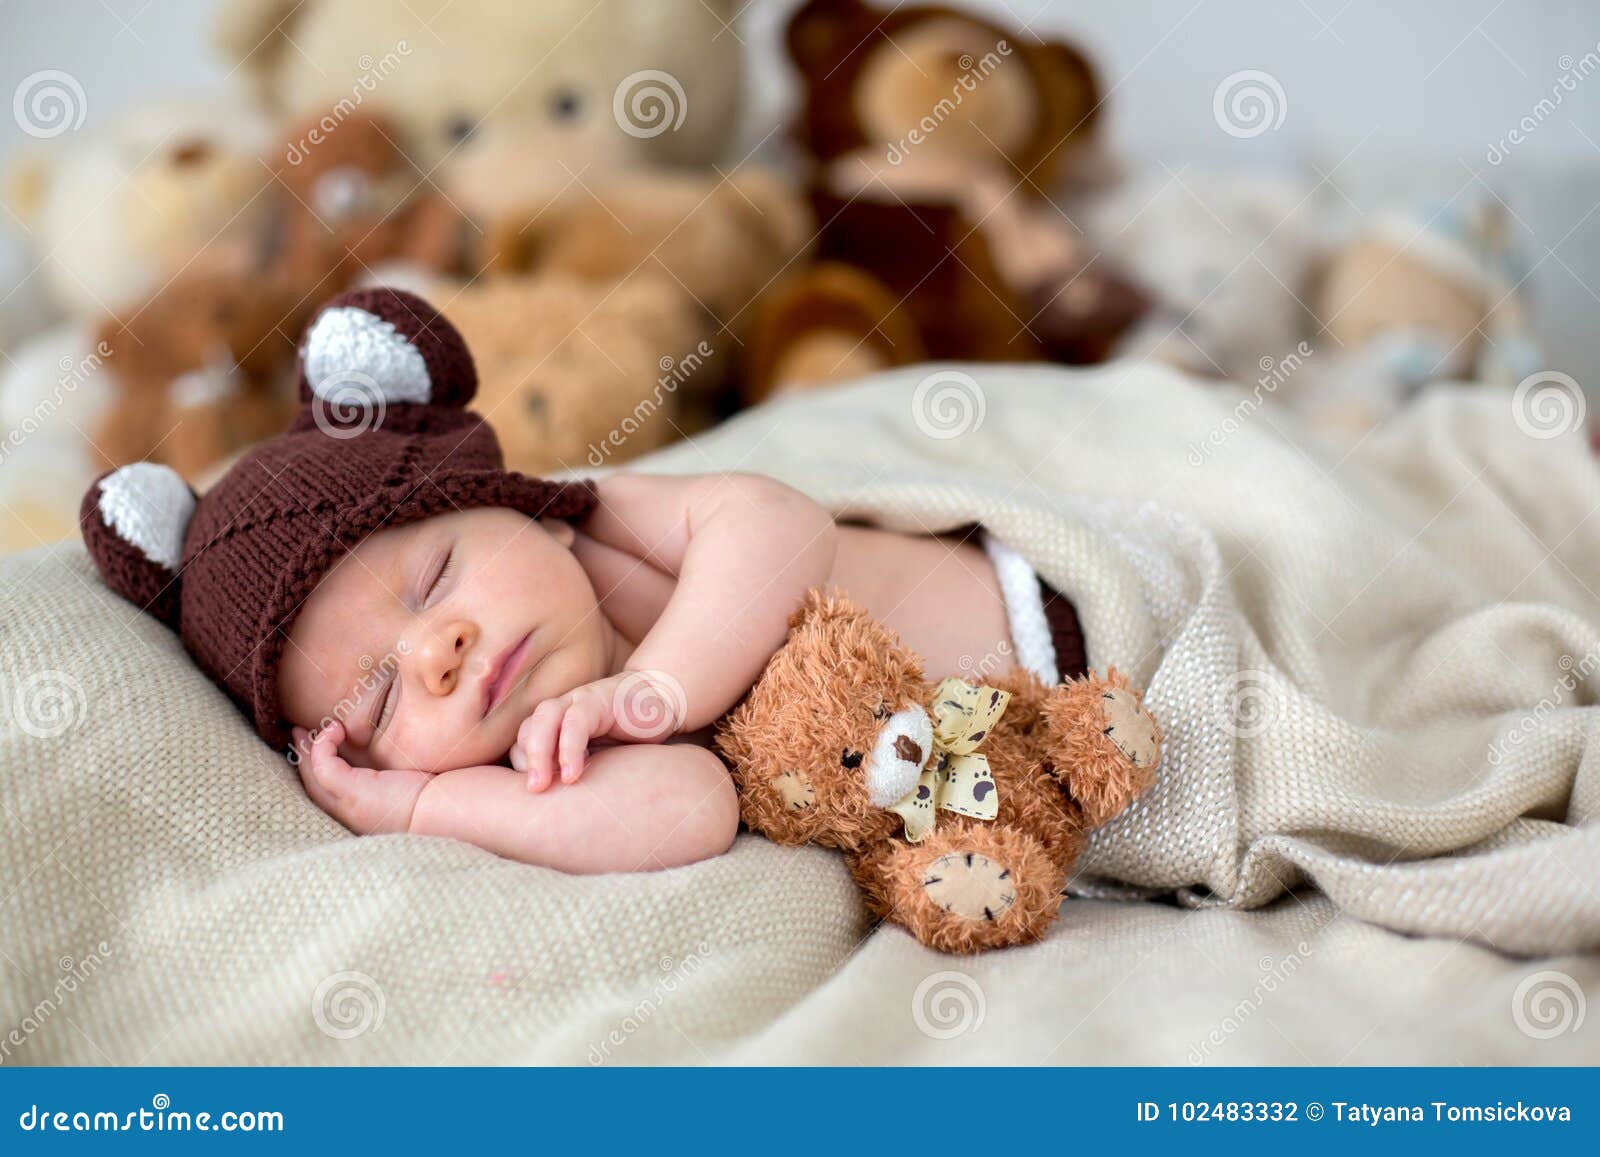 https://thumbs.dreamstime.com/z/peque%C3%B1o-beb%C3%A9-reci%C3%A9n-nacido-durmiendo-con-el-oso-de-peluche-en-casa-cama-102483332.jpg